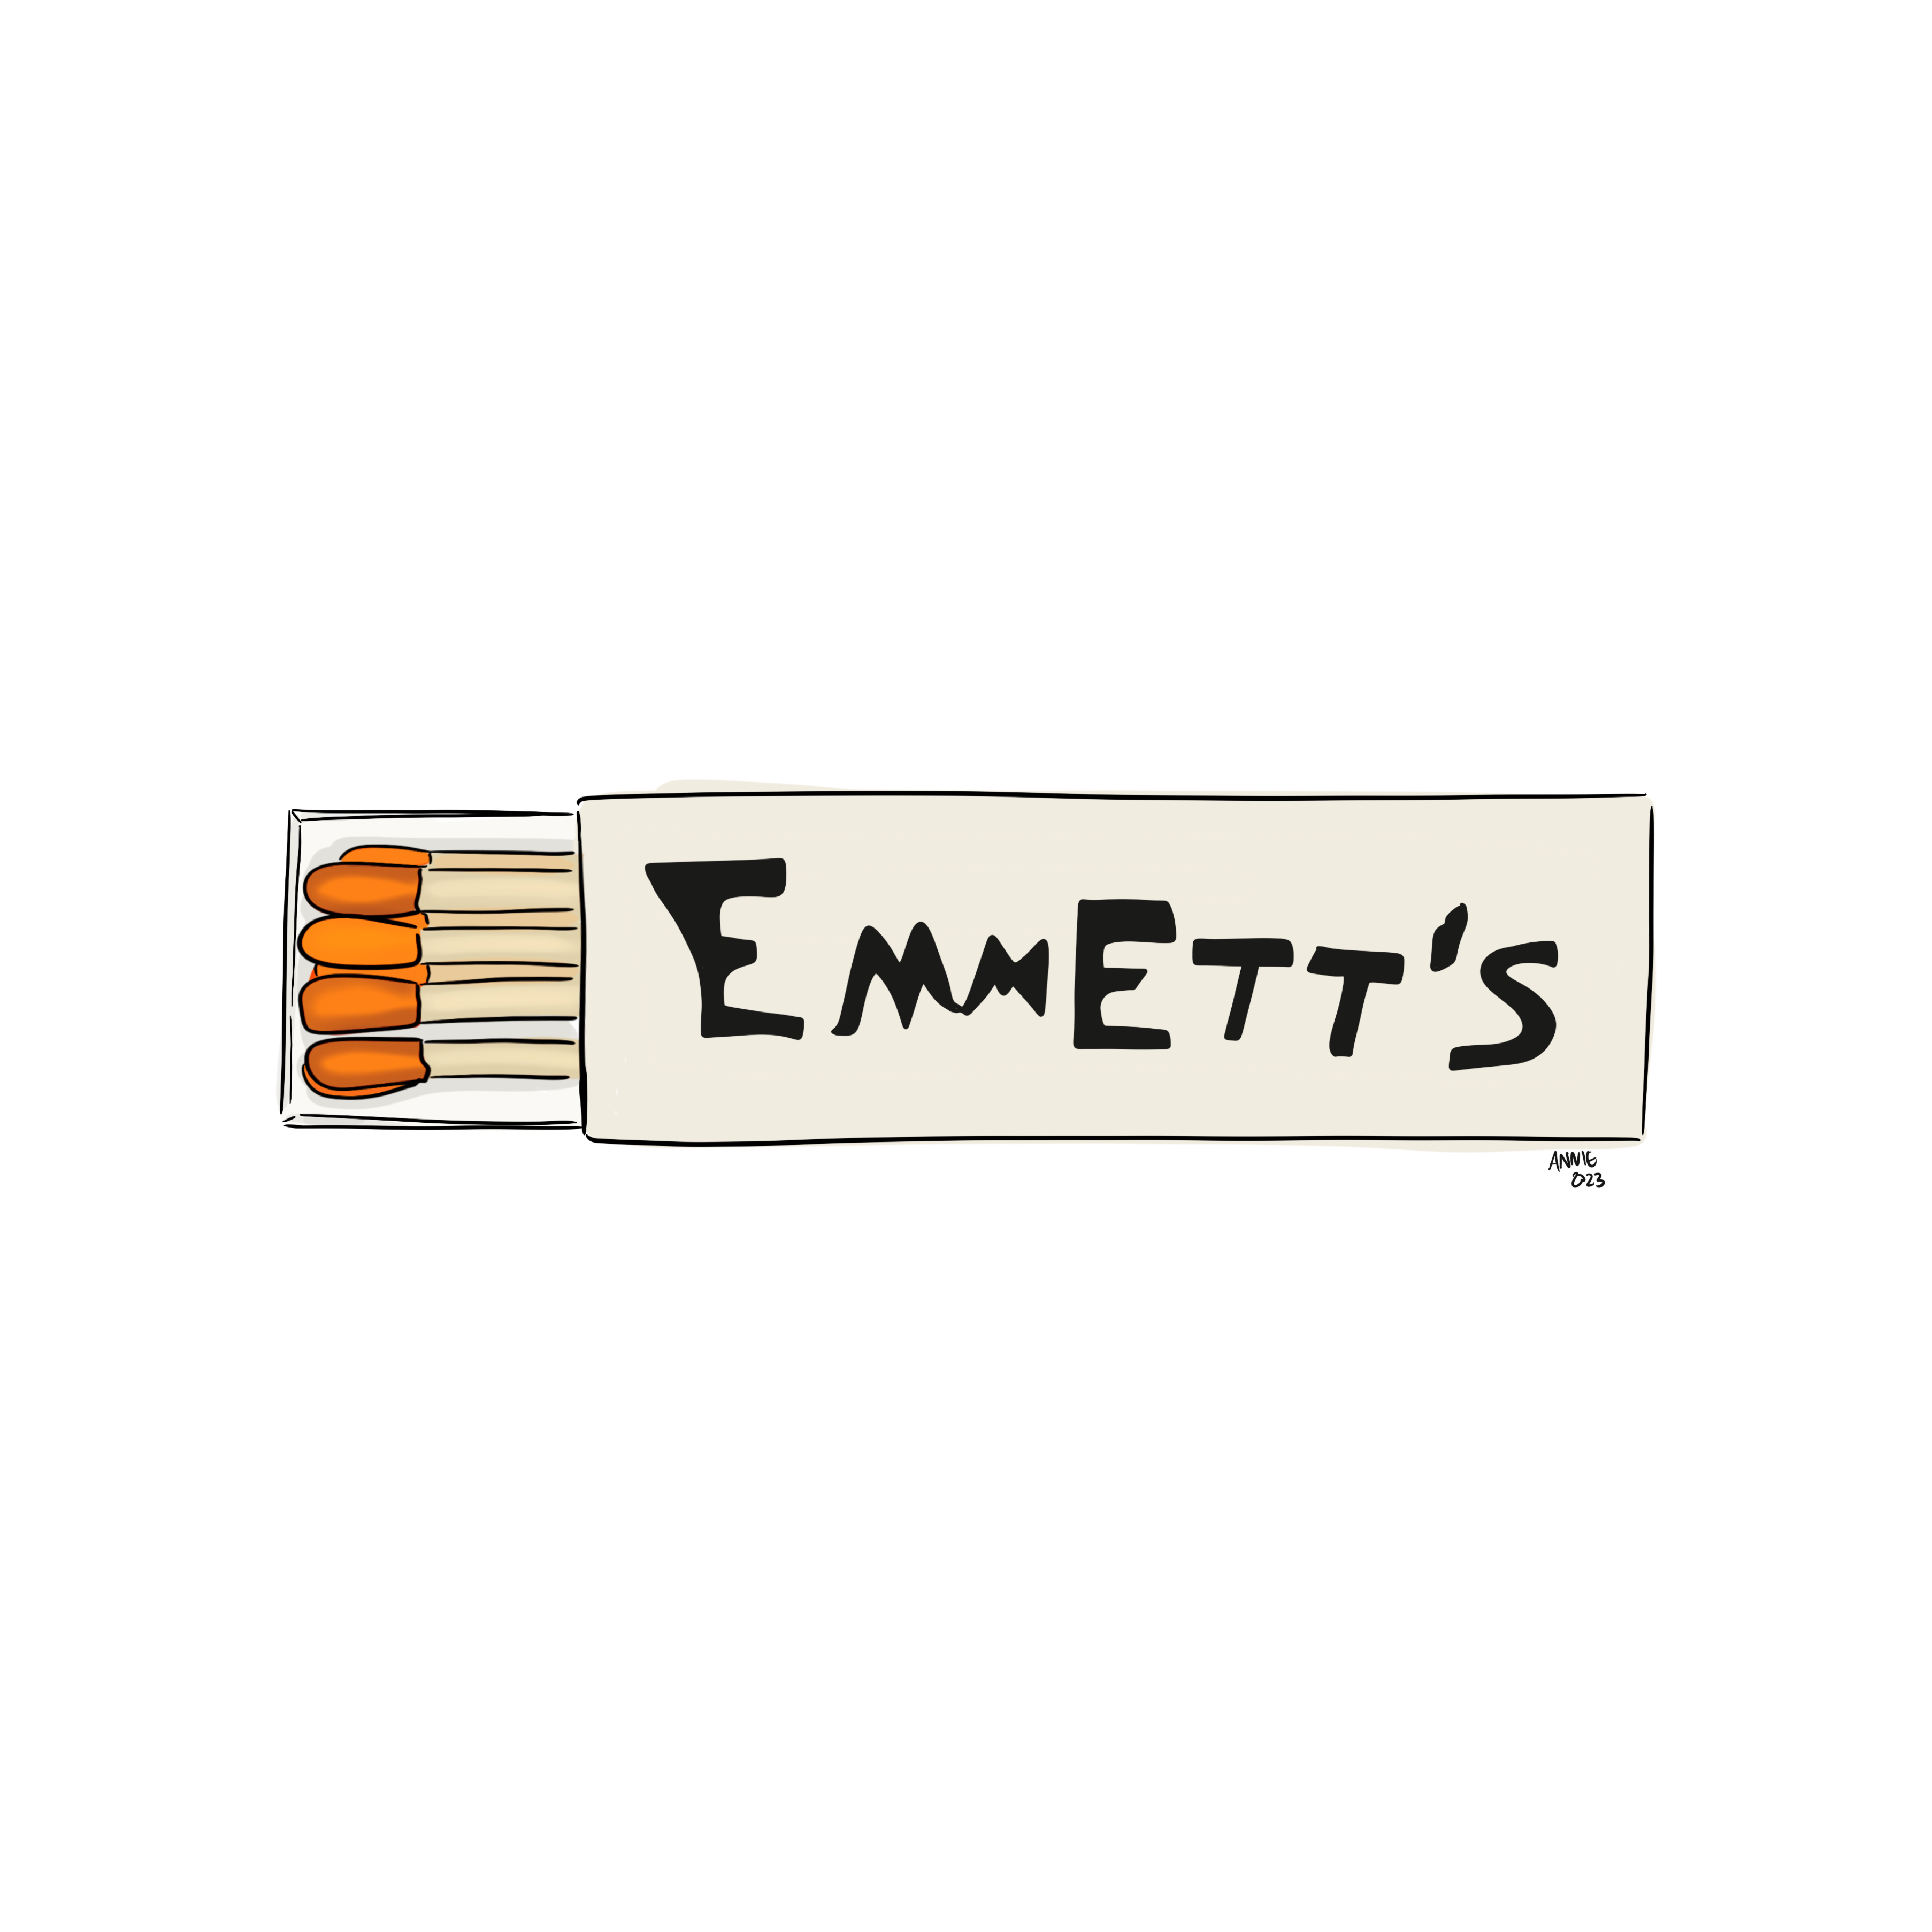 Emmette's Matchbook